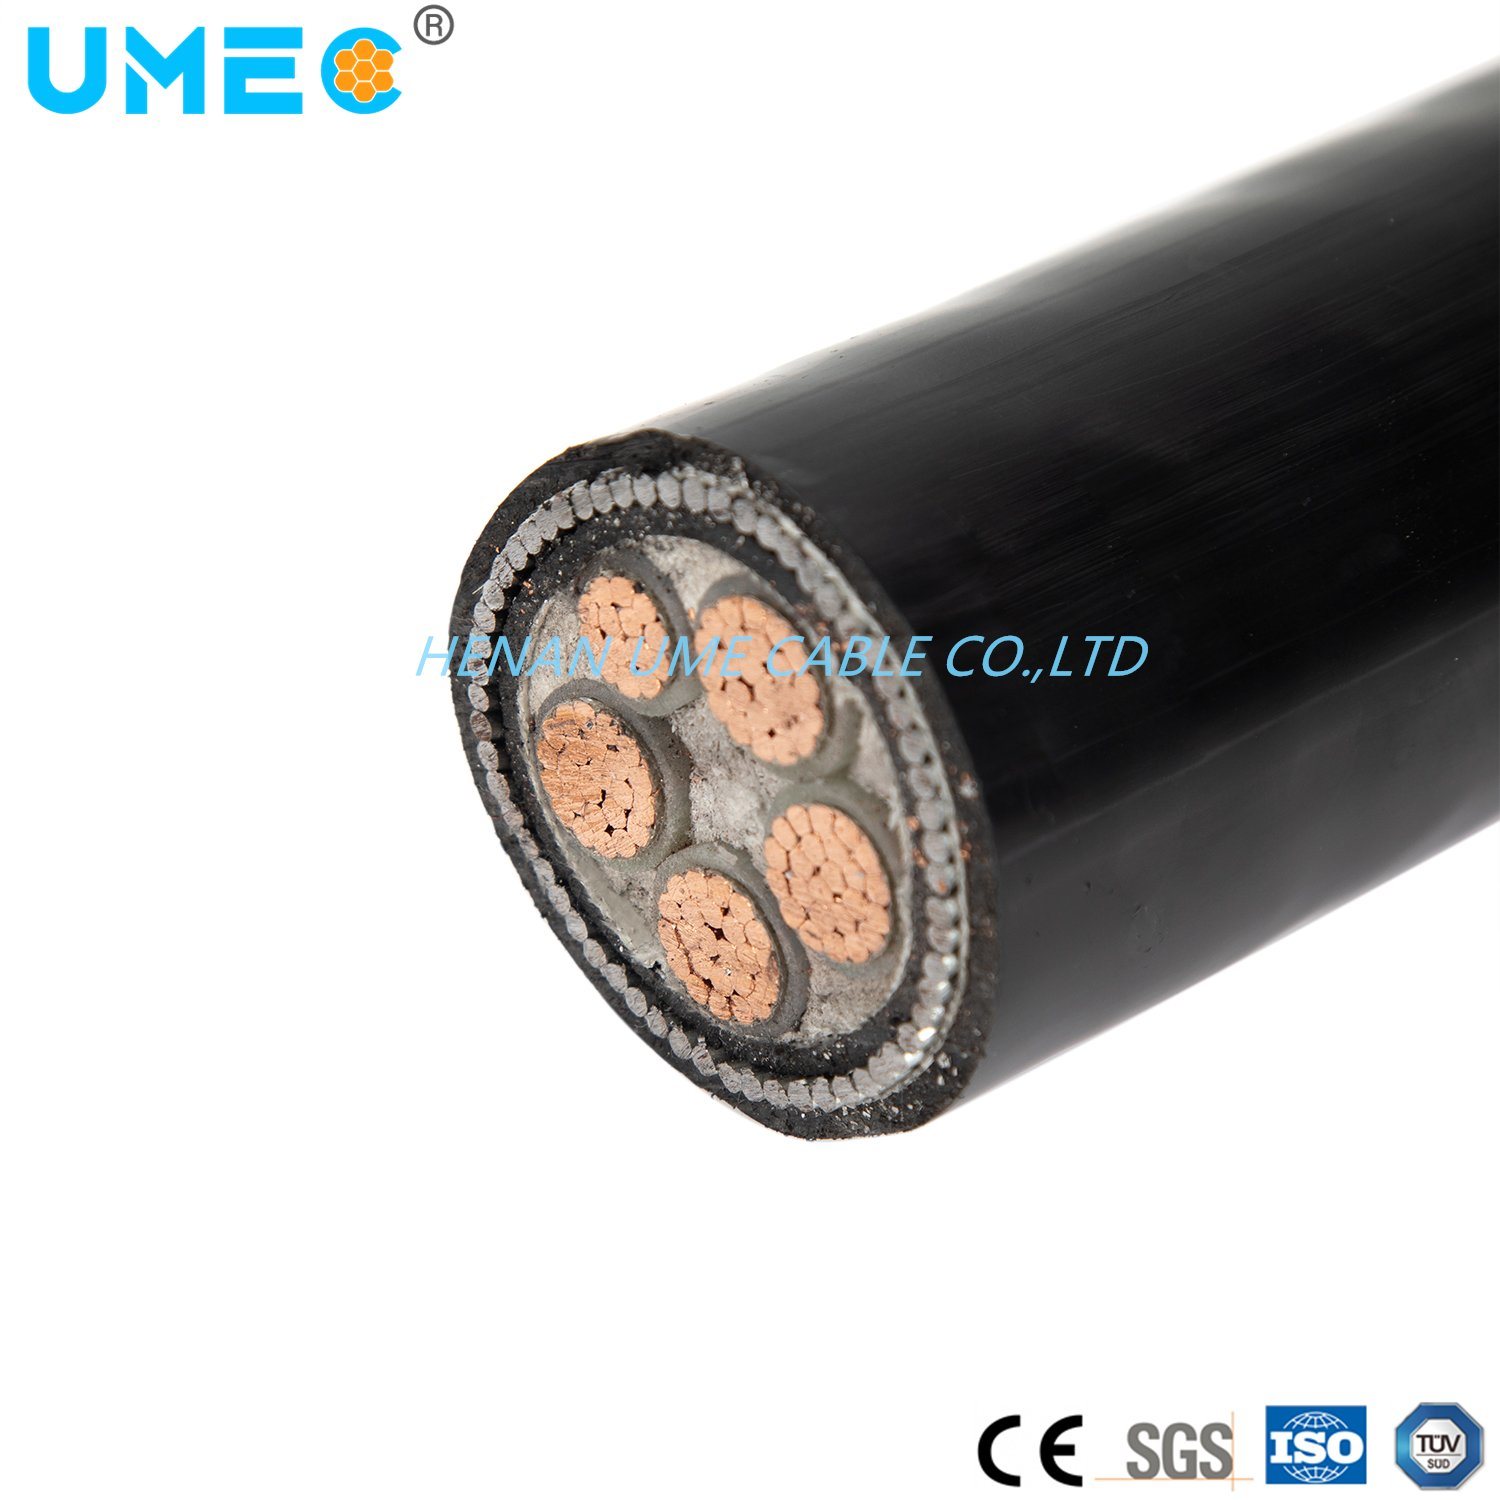 
                La Chine usine de câbles de cuivre/aluminium 0.6/1kv conducteurs du fil en acier avec isolation XLPE Gaine en PVC blindés Câble d′alimentation
            